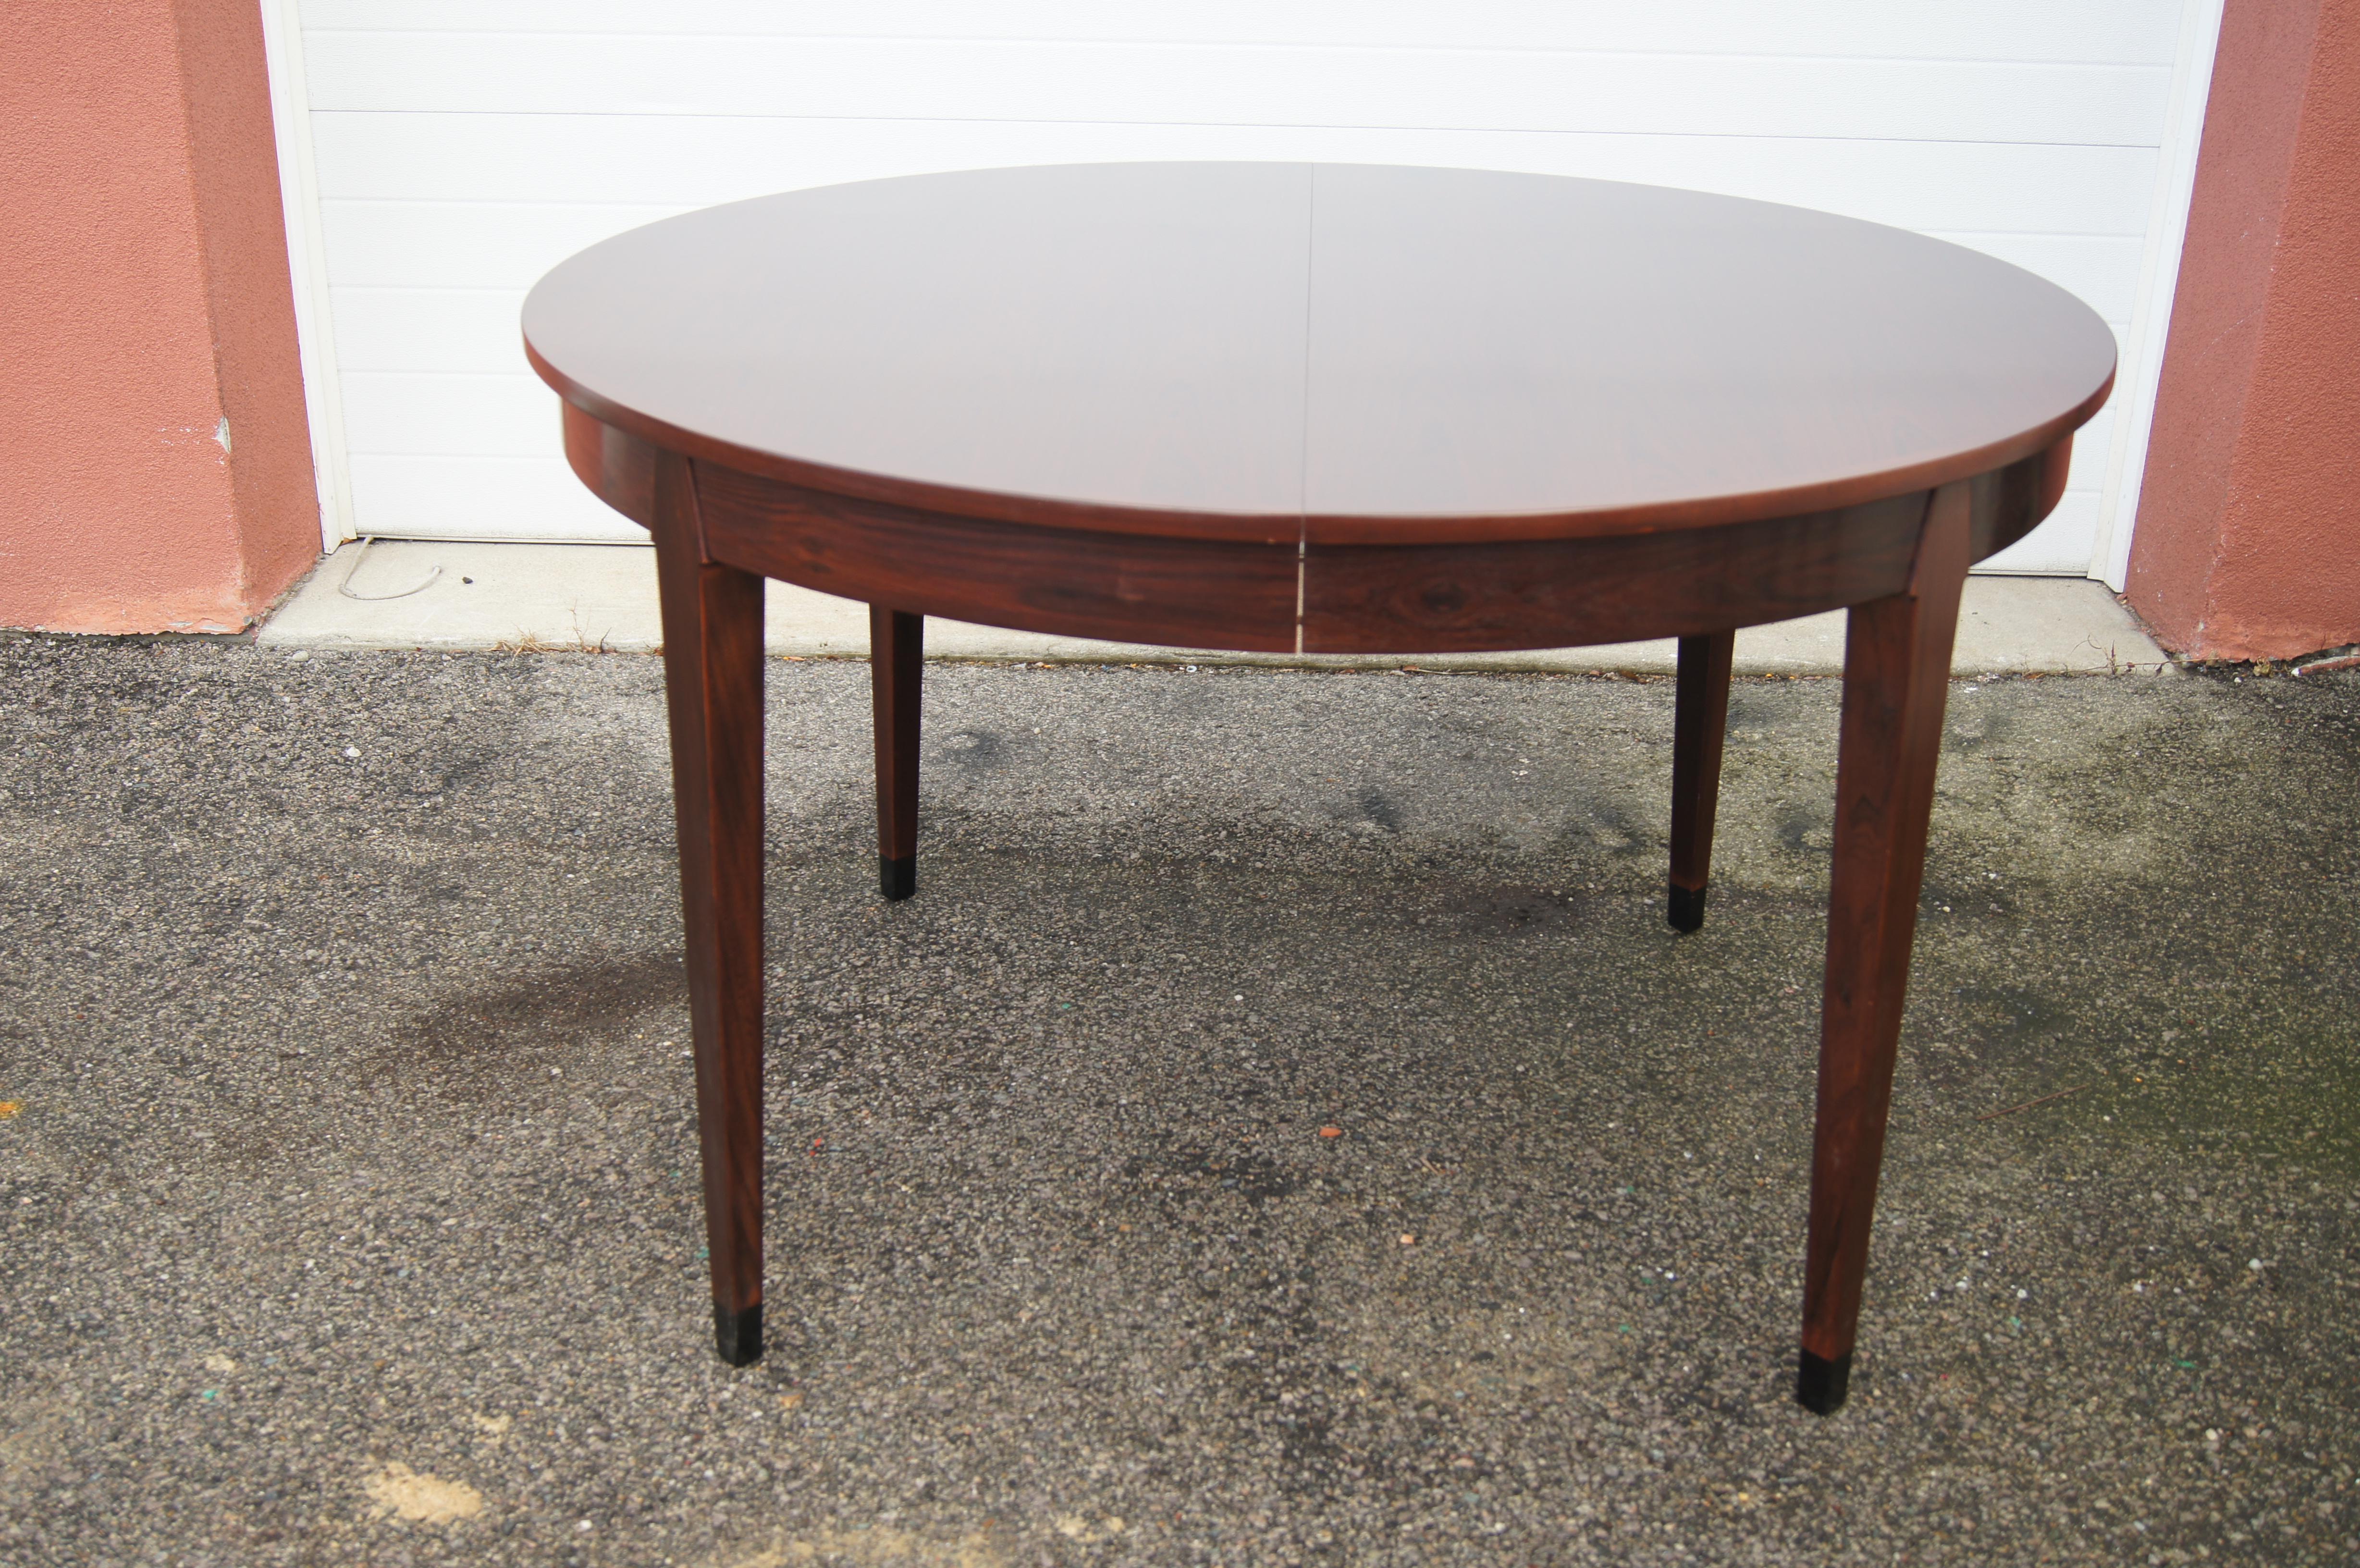 Der dänische Modernist Arne Vodder entwarf diesen runden Esstisch aus Palisanderholz mit konischen Beinen in den 1960er Jahren. Mit einer zusätzlichen Platte (19,75 x 49,18 Zoll) wird er zu einem breiteren ovalen Tisch von 68,75 Zoll erweitert.